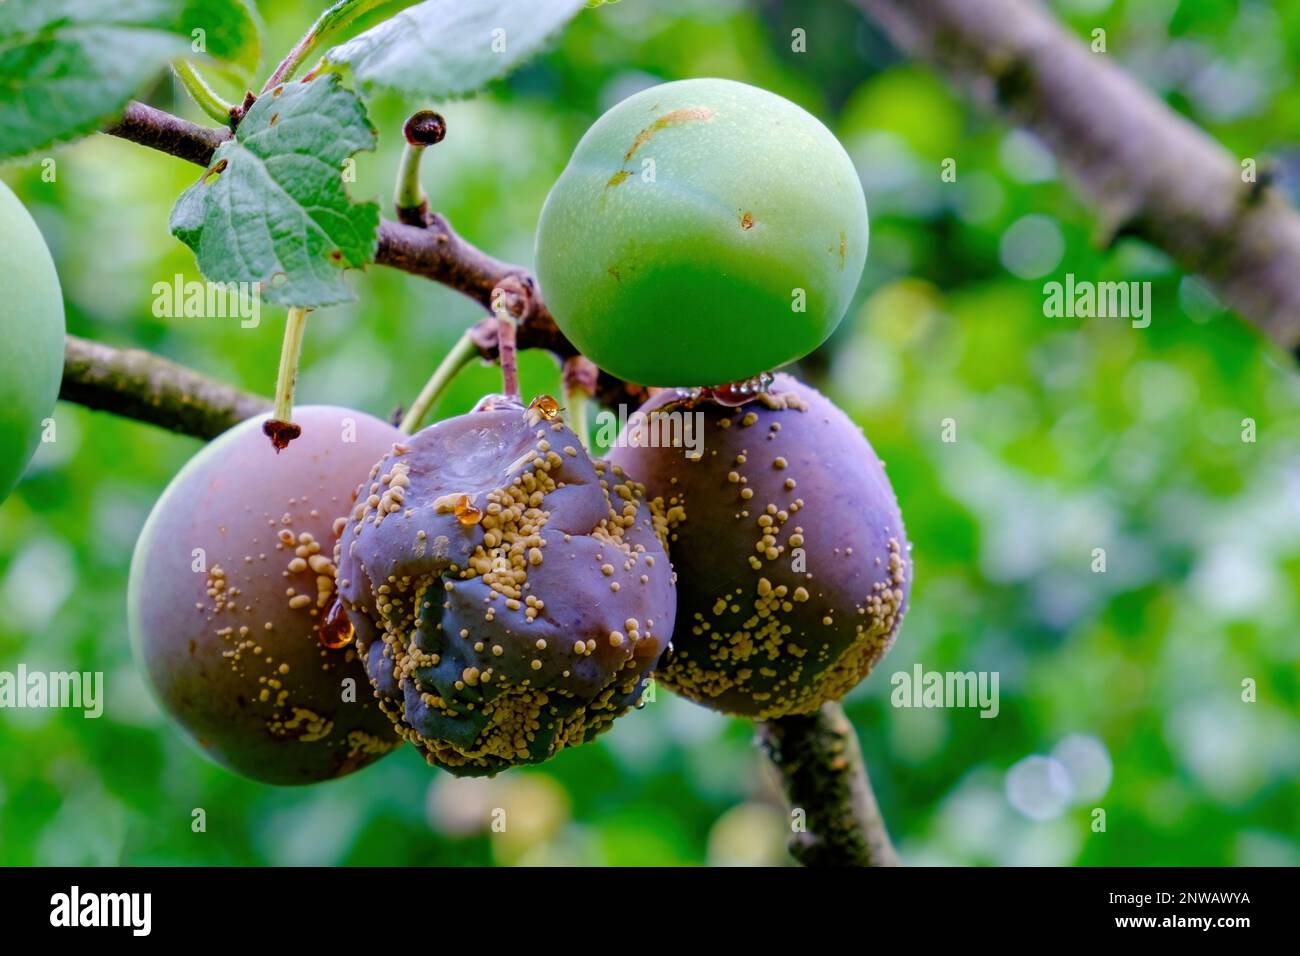 Clasterosporium. Fungal disease of plums Stock Photo